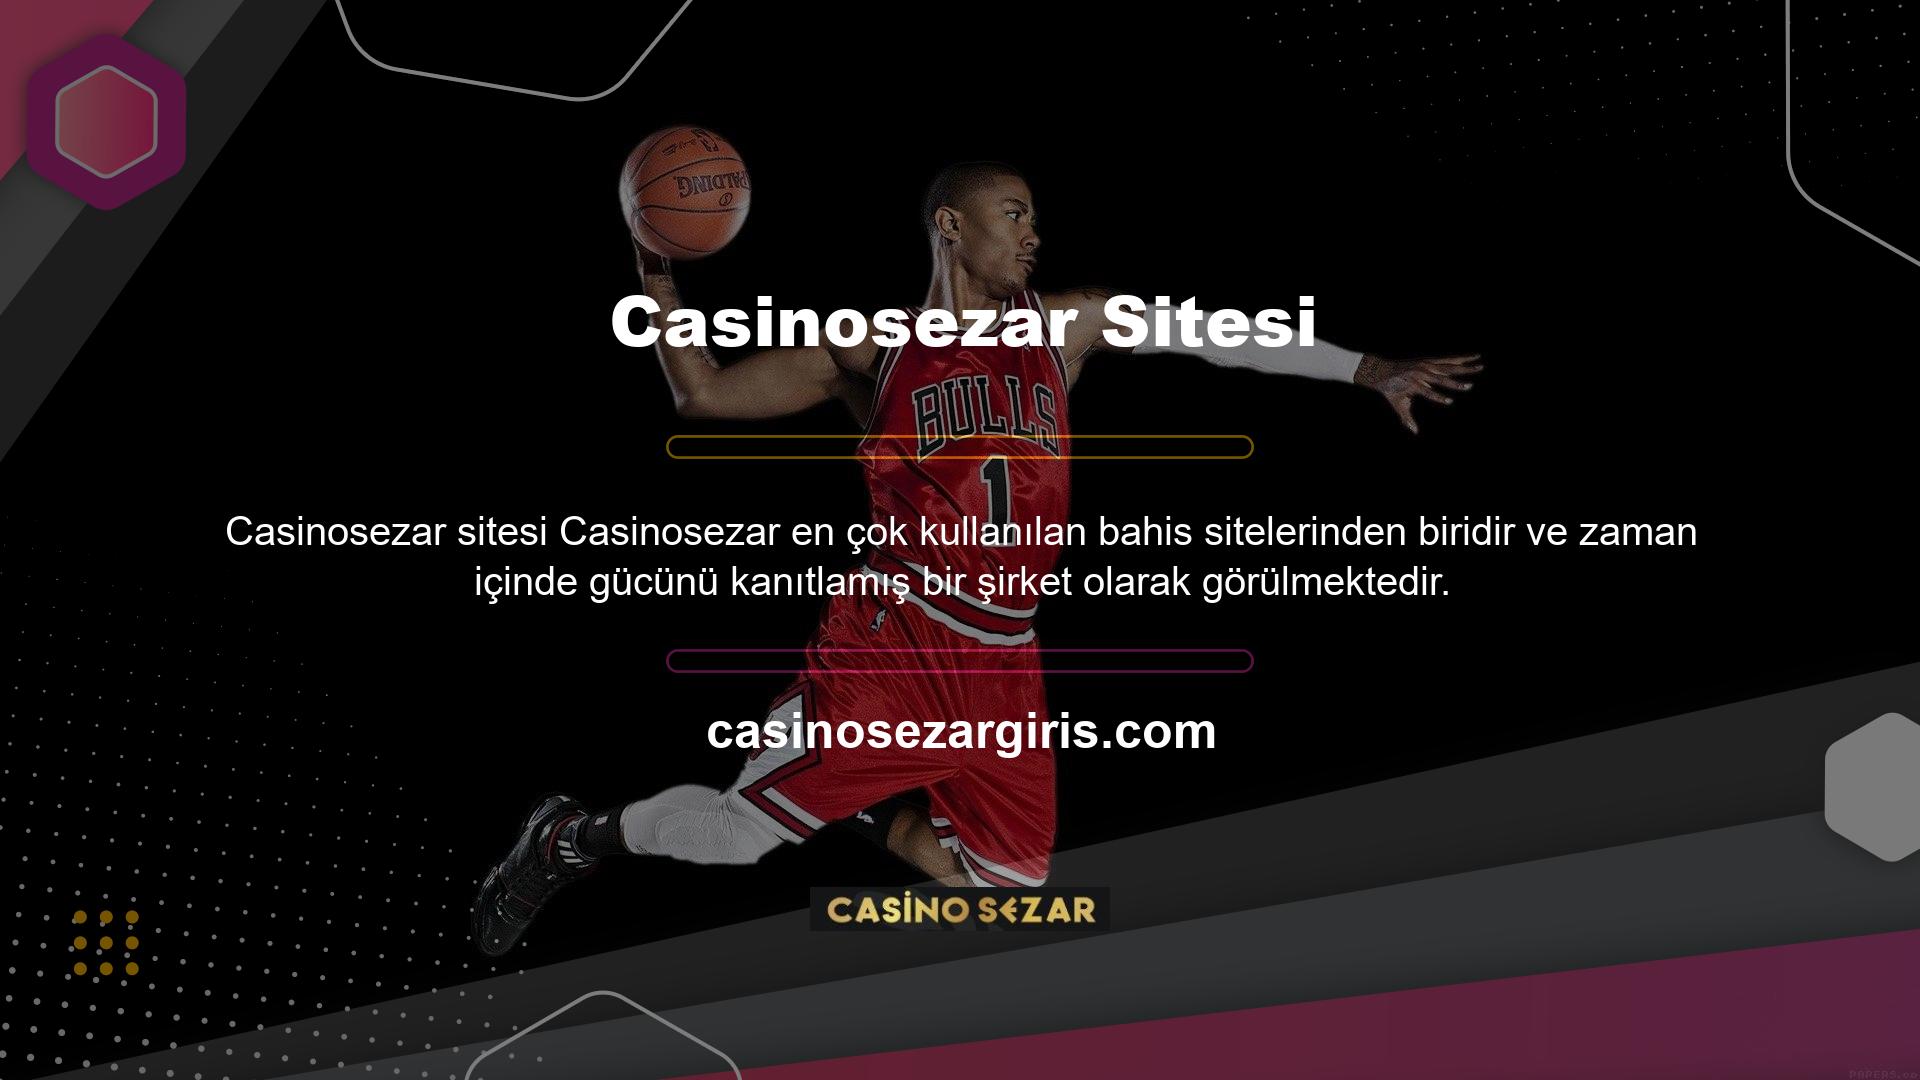 Casinosezar Bahis, çevrimiçi bahis sektörünün en iyilerinden biri olarak bilinir ve profesyonel ve kaliteli bahis hizmetleri için fırsat sunar